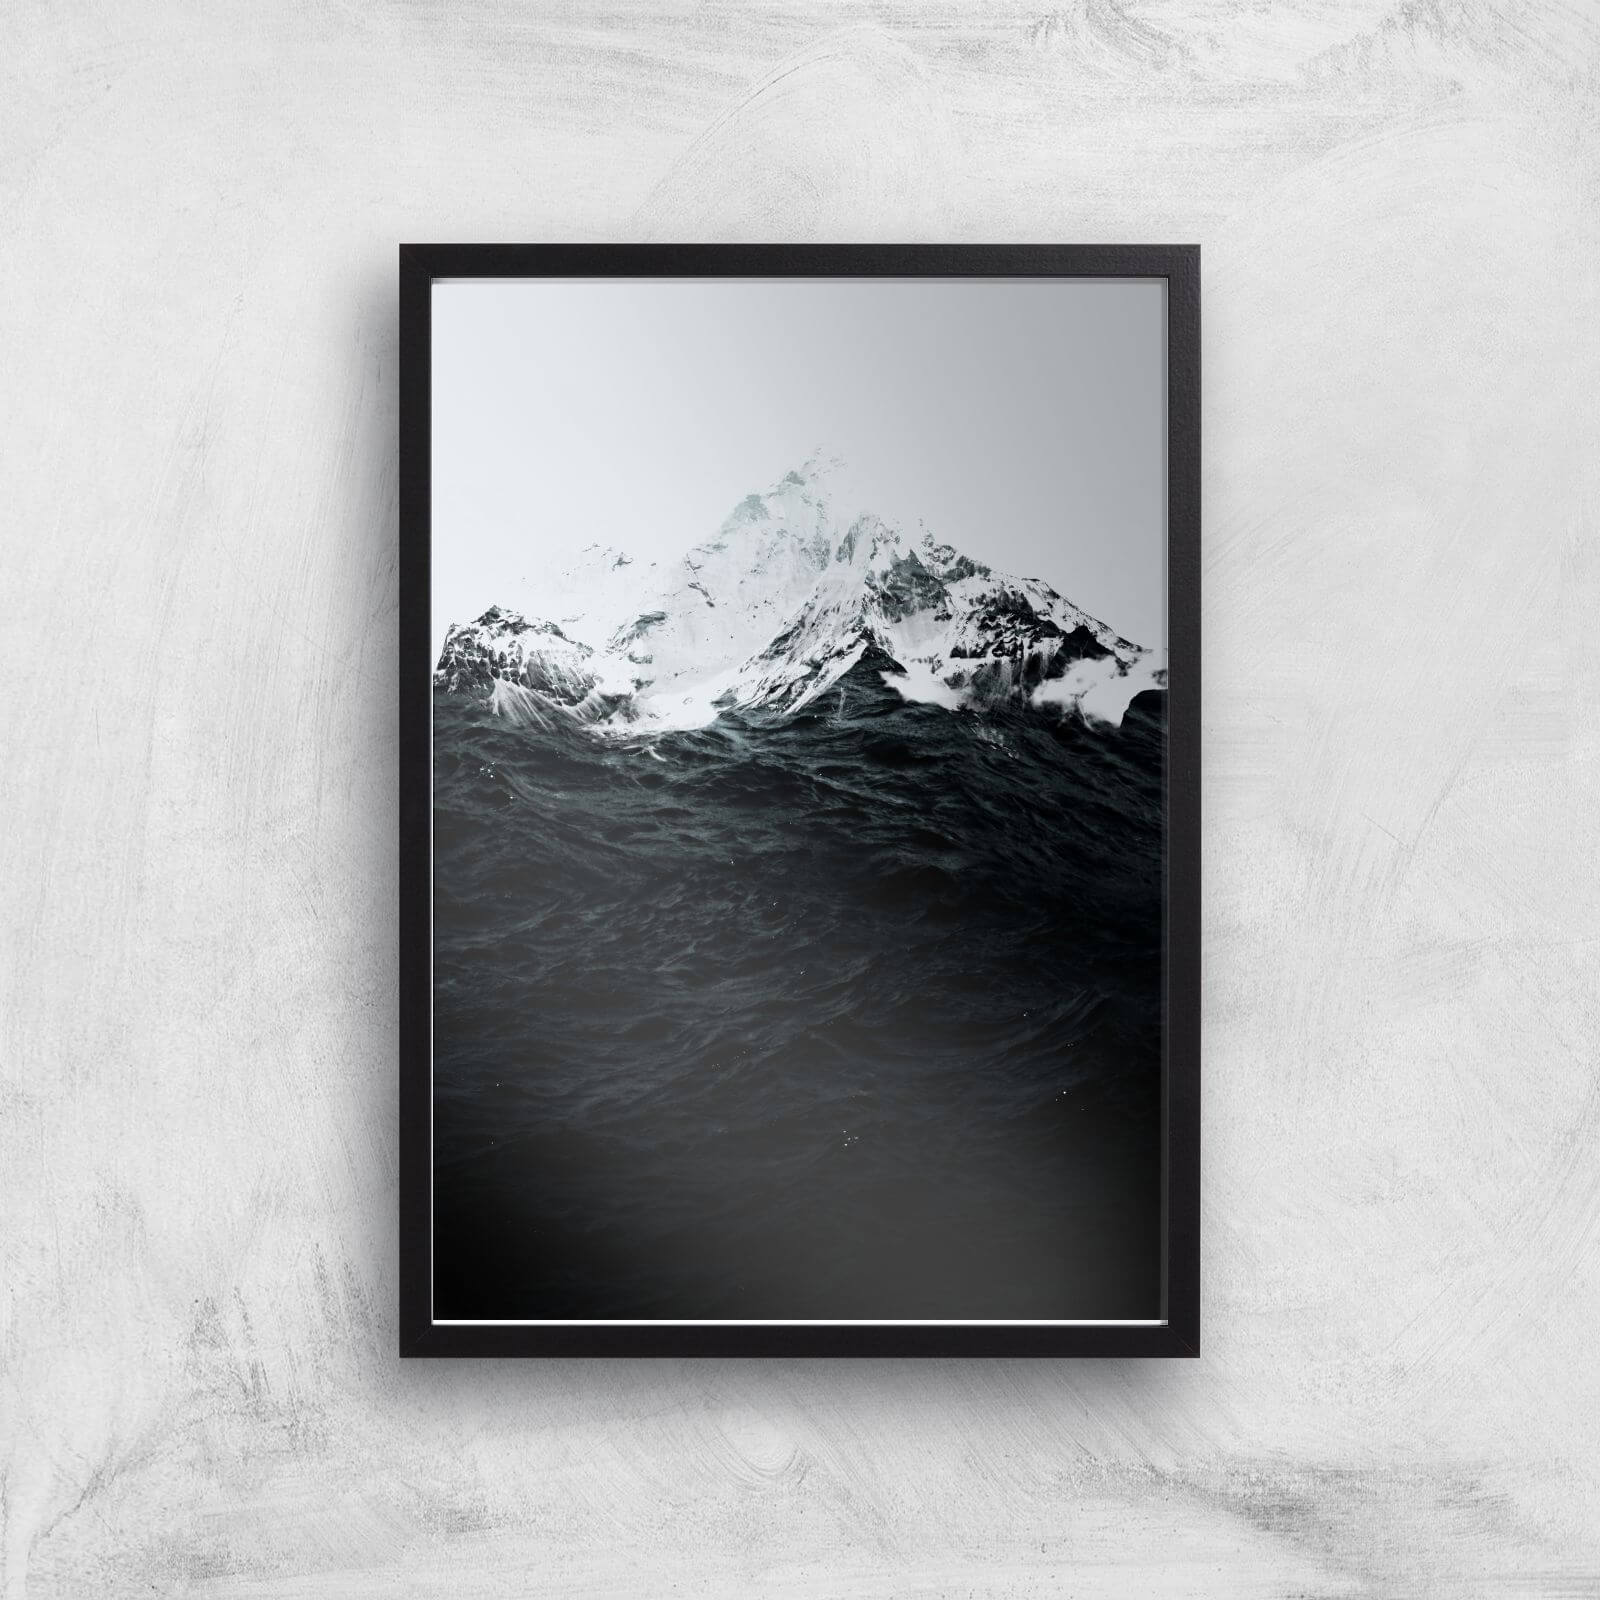 Those Waves Were Like Mountains Giclee Art Print - A2 - Black Frame